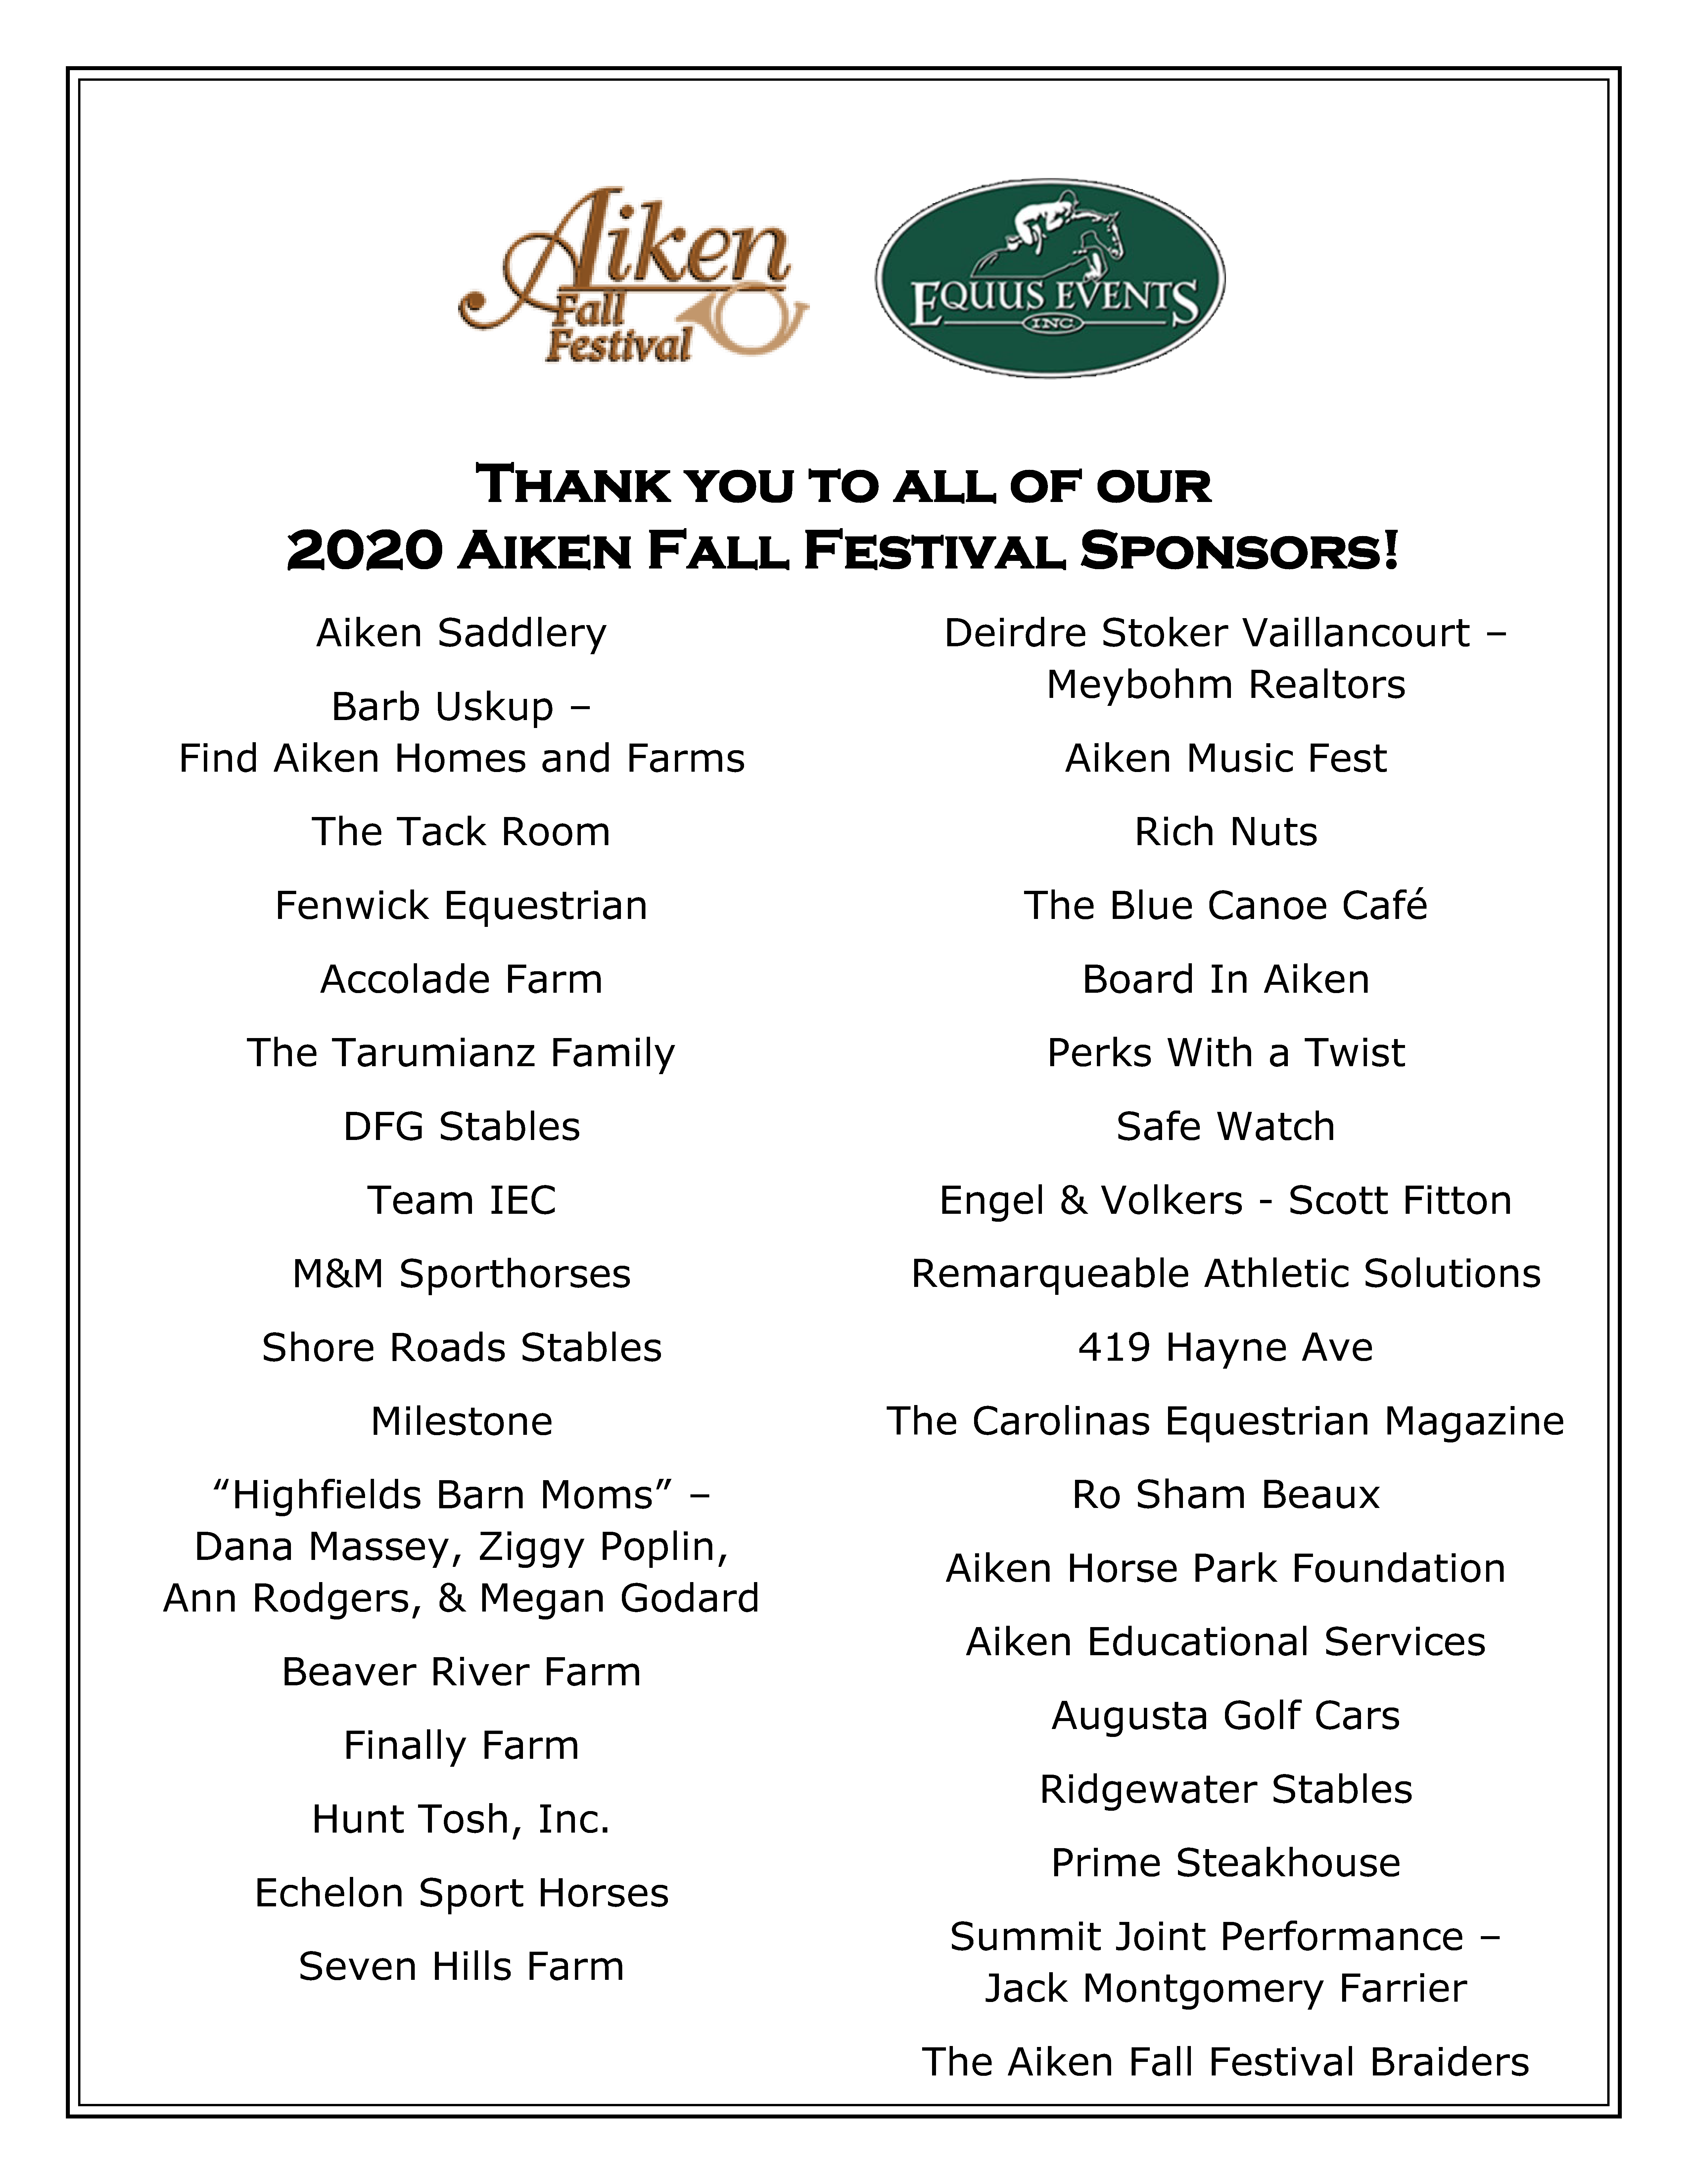 2020 Aiken Fall Festival Equus Events